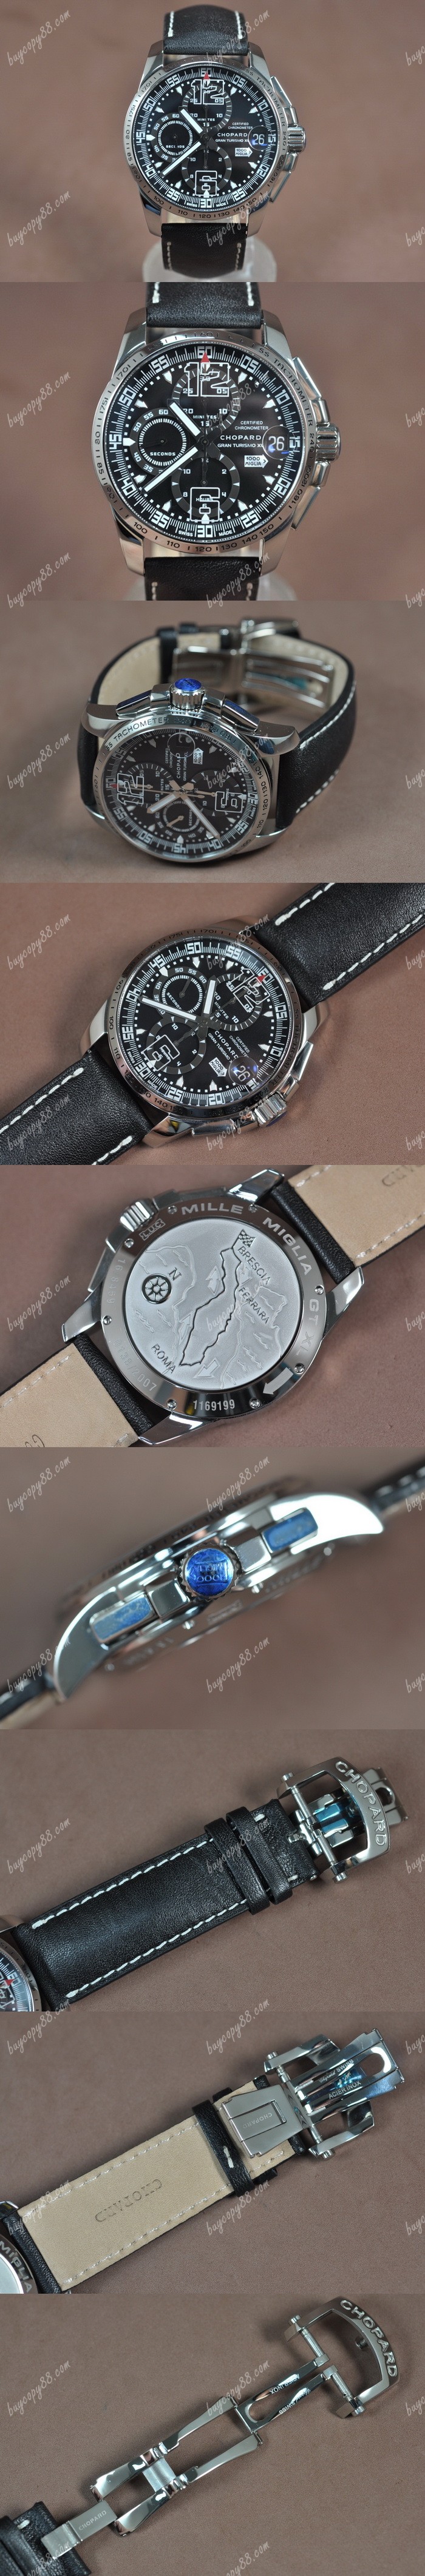 蕭邦錶Chopard Mile Miglia GTXXL Chrono SS/LE Black dial A-7750自動機芯搭載0